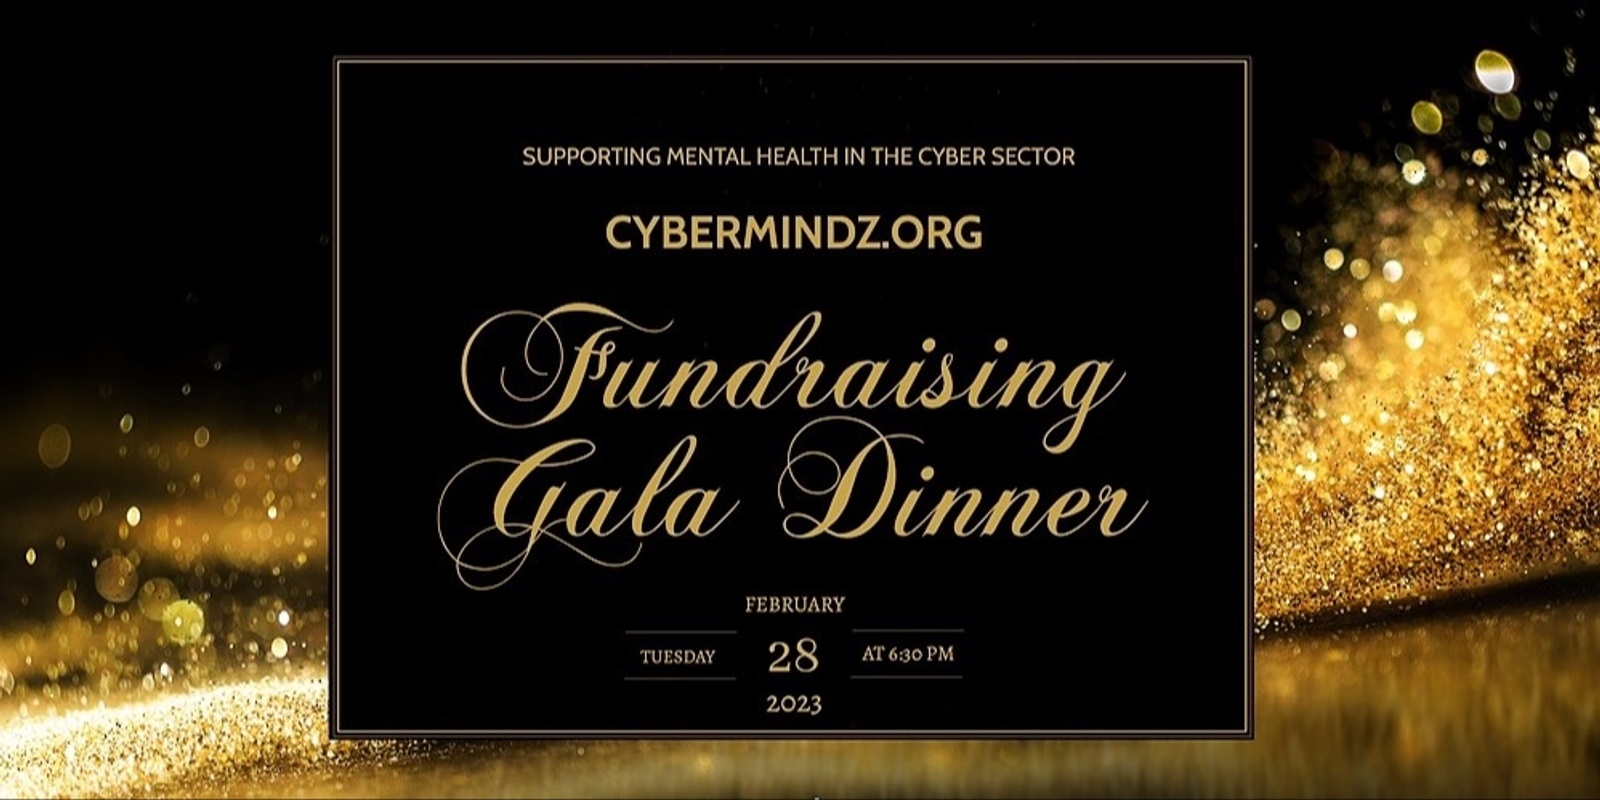 Banner image for Cybermindz.org Fundraiser Gala Dinner